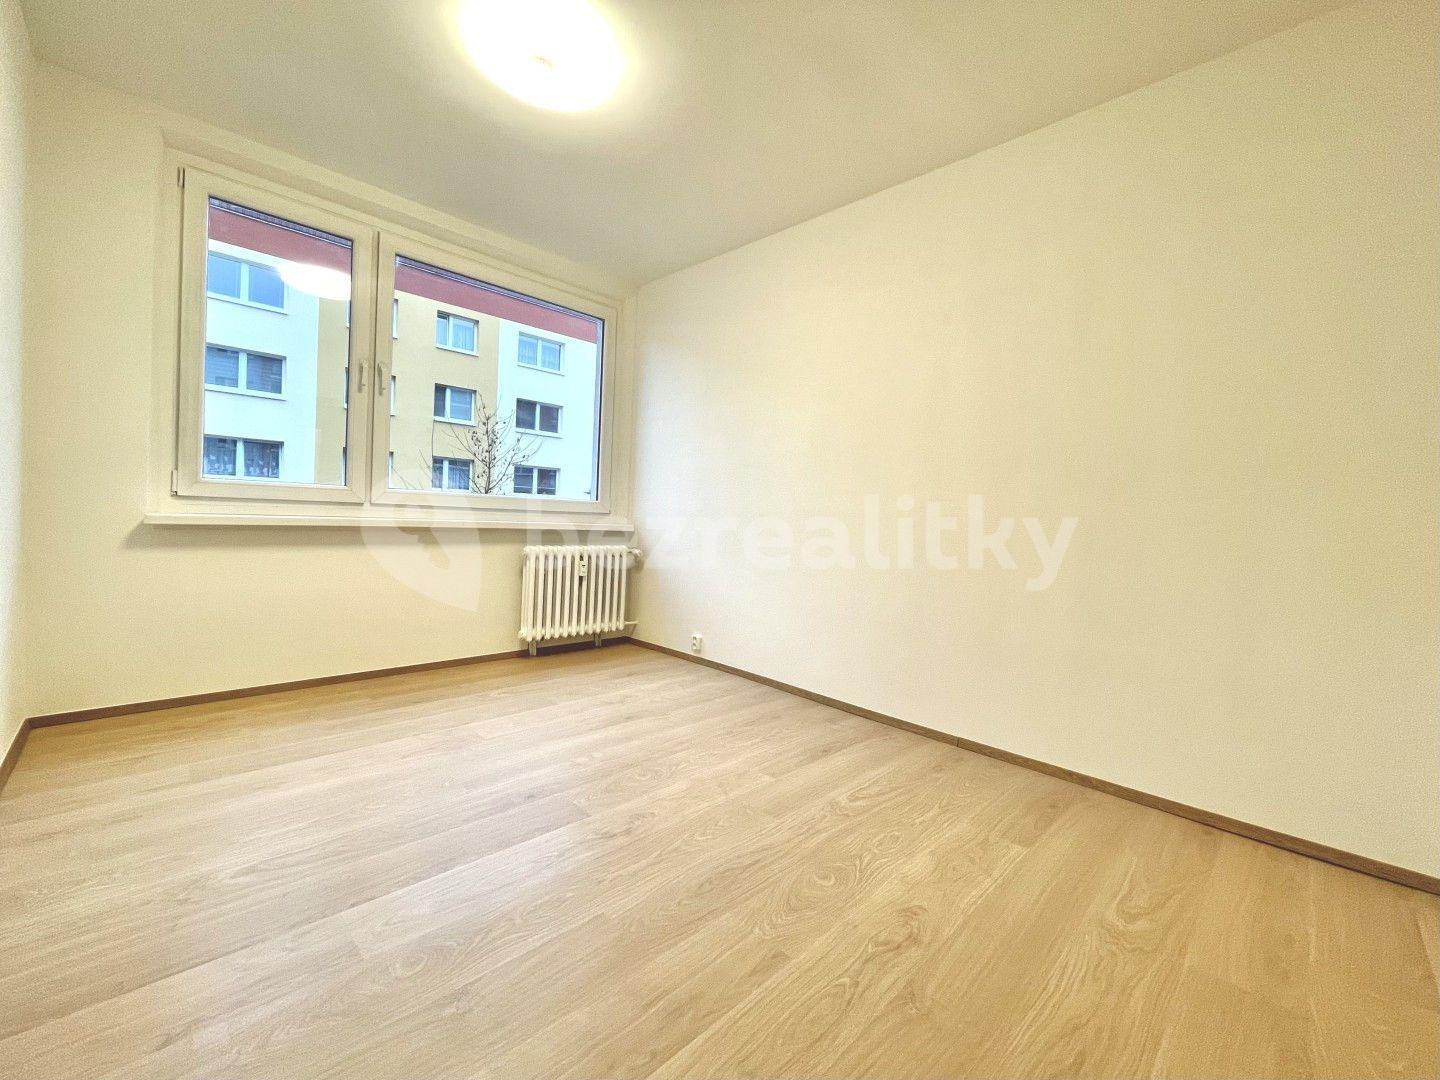 1 bedroom with open-plan kitchen flat for sale, 40 m², Jateční, Osek, Ústecký Region